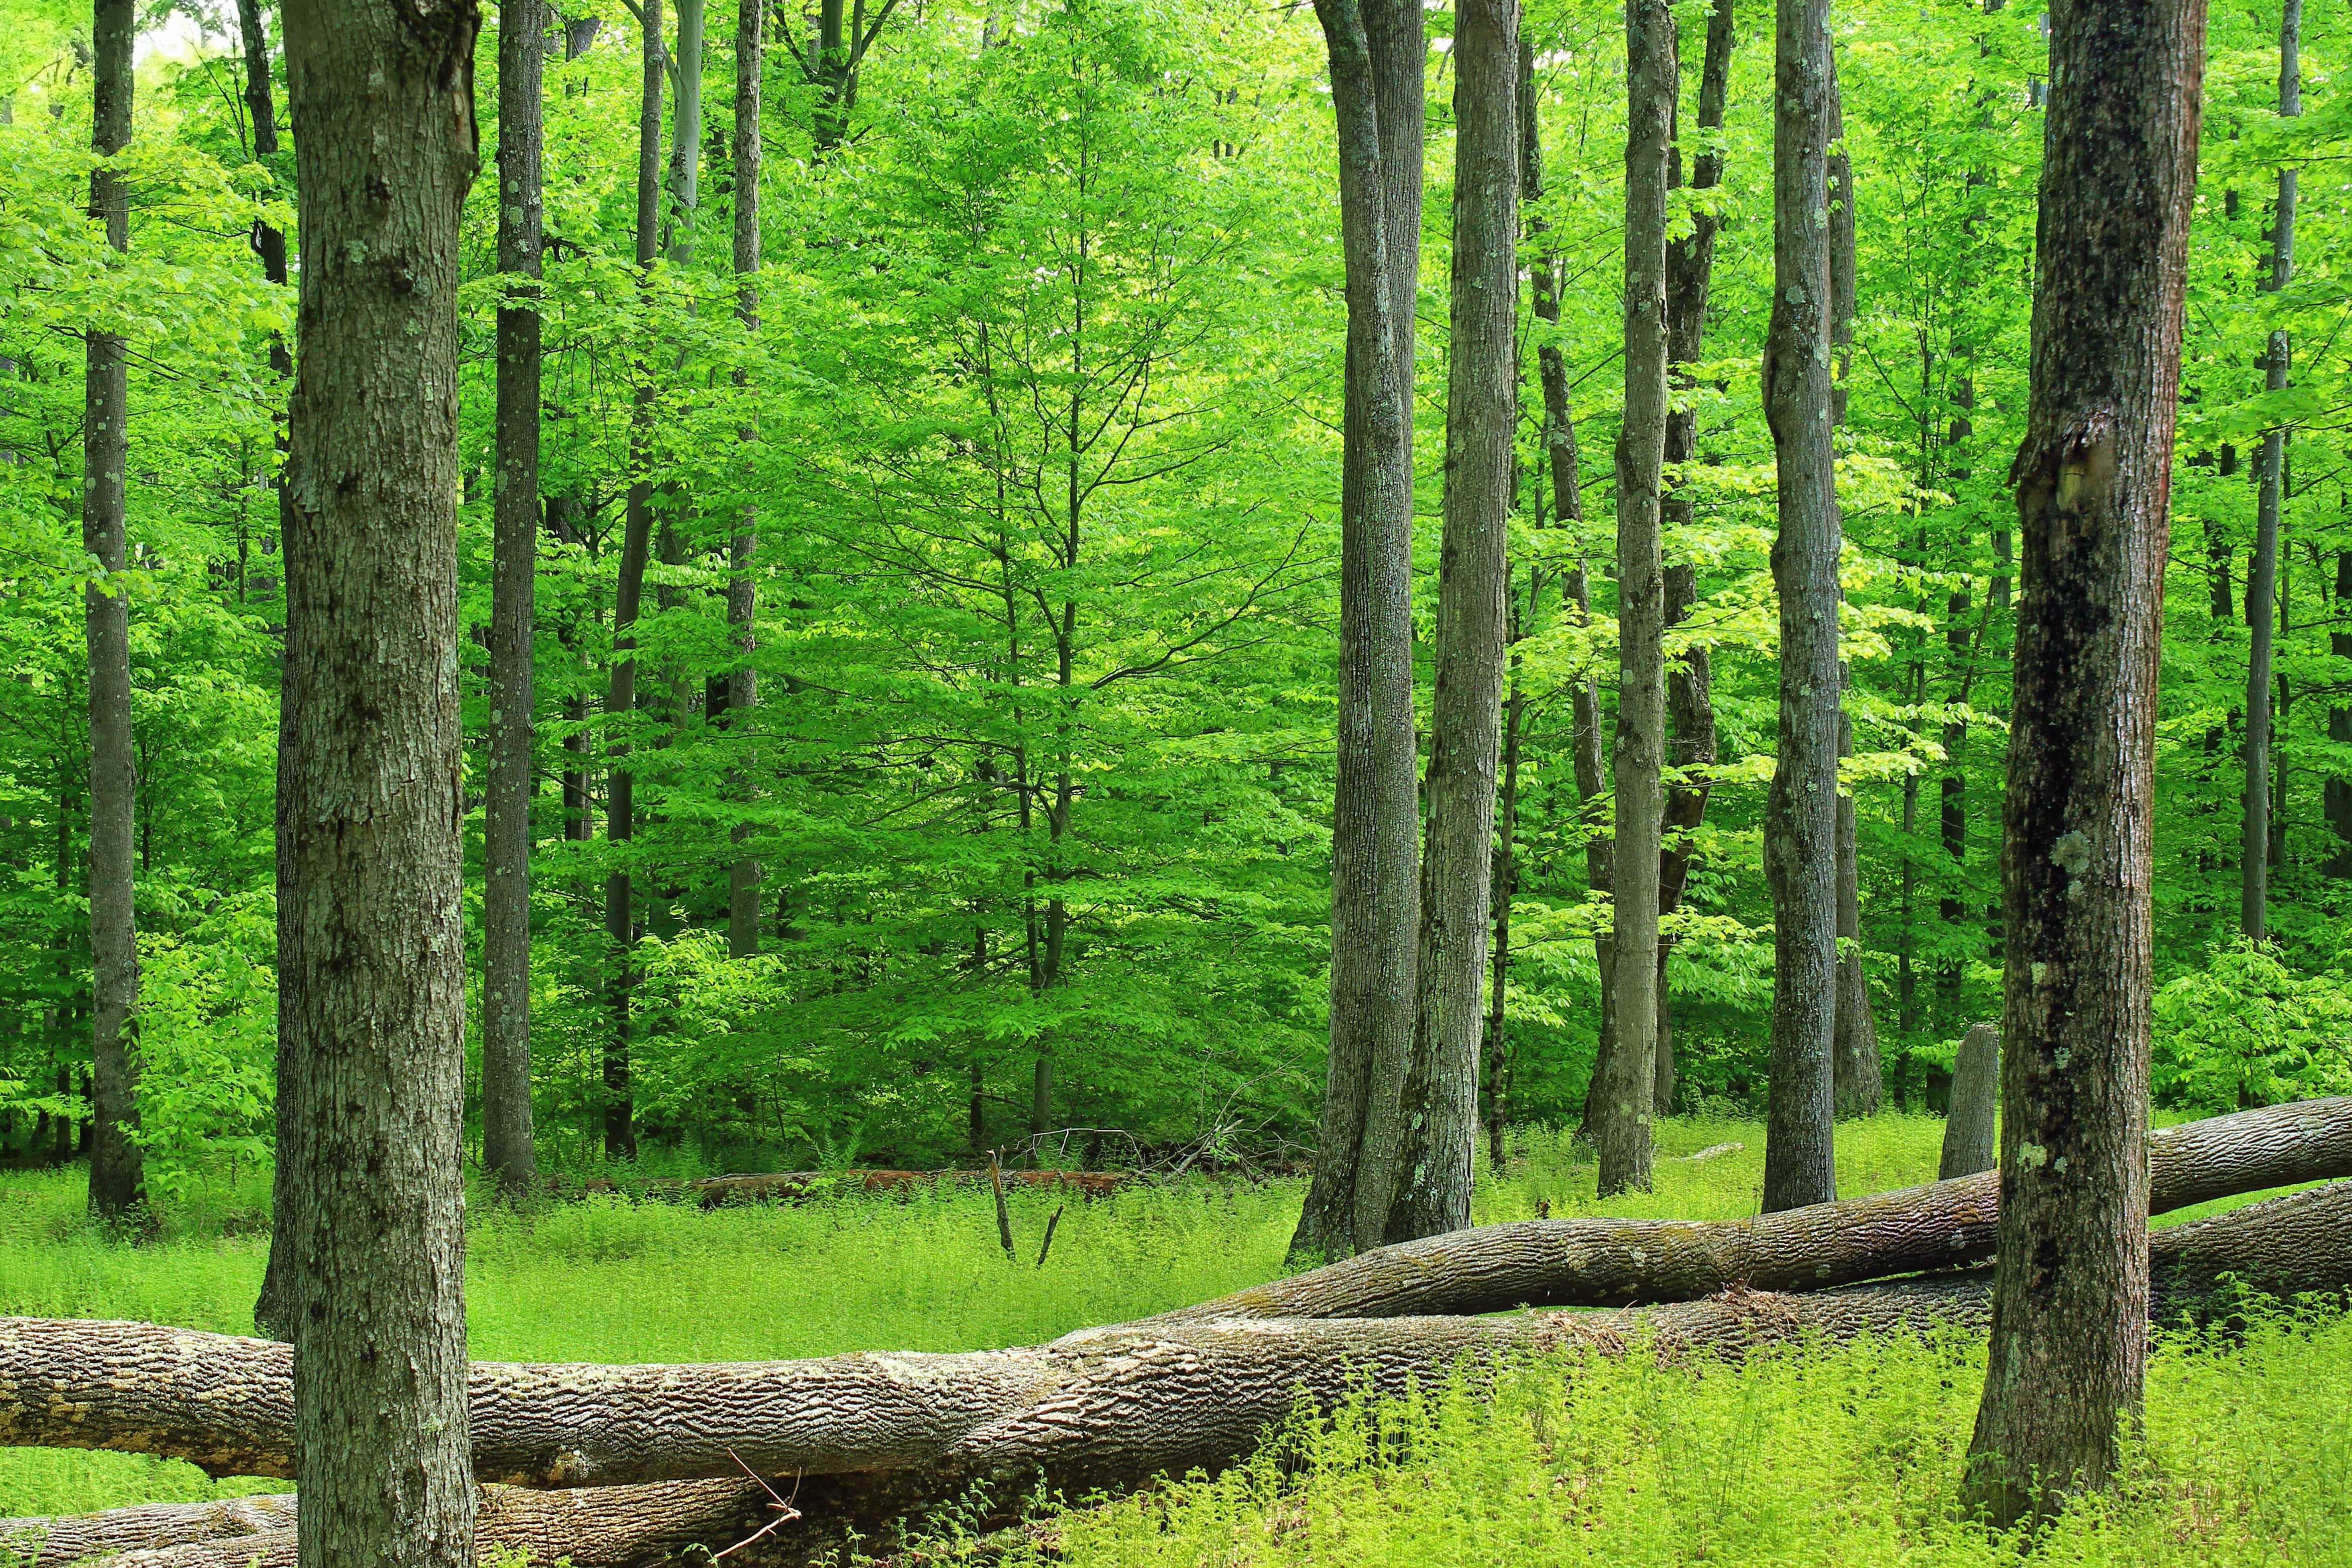 Hình ảnh miễn phí: Thiên nhiên, gỗ, cây xanh, mùa hè, lá, cây, phong cảnh,  môi trường